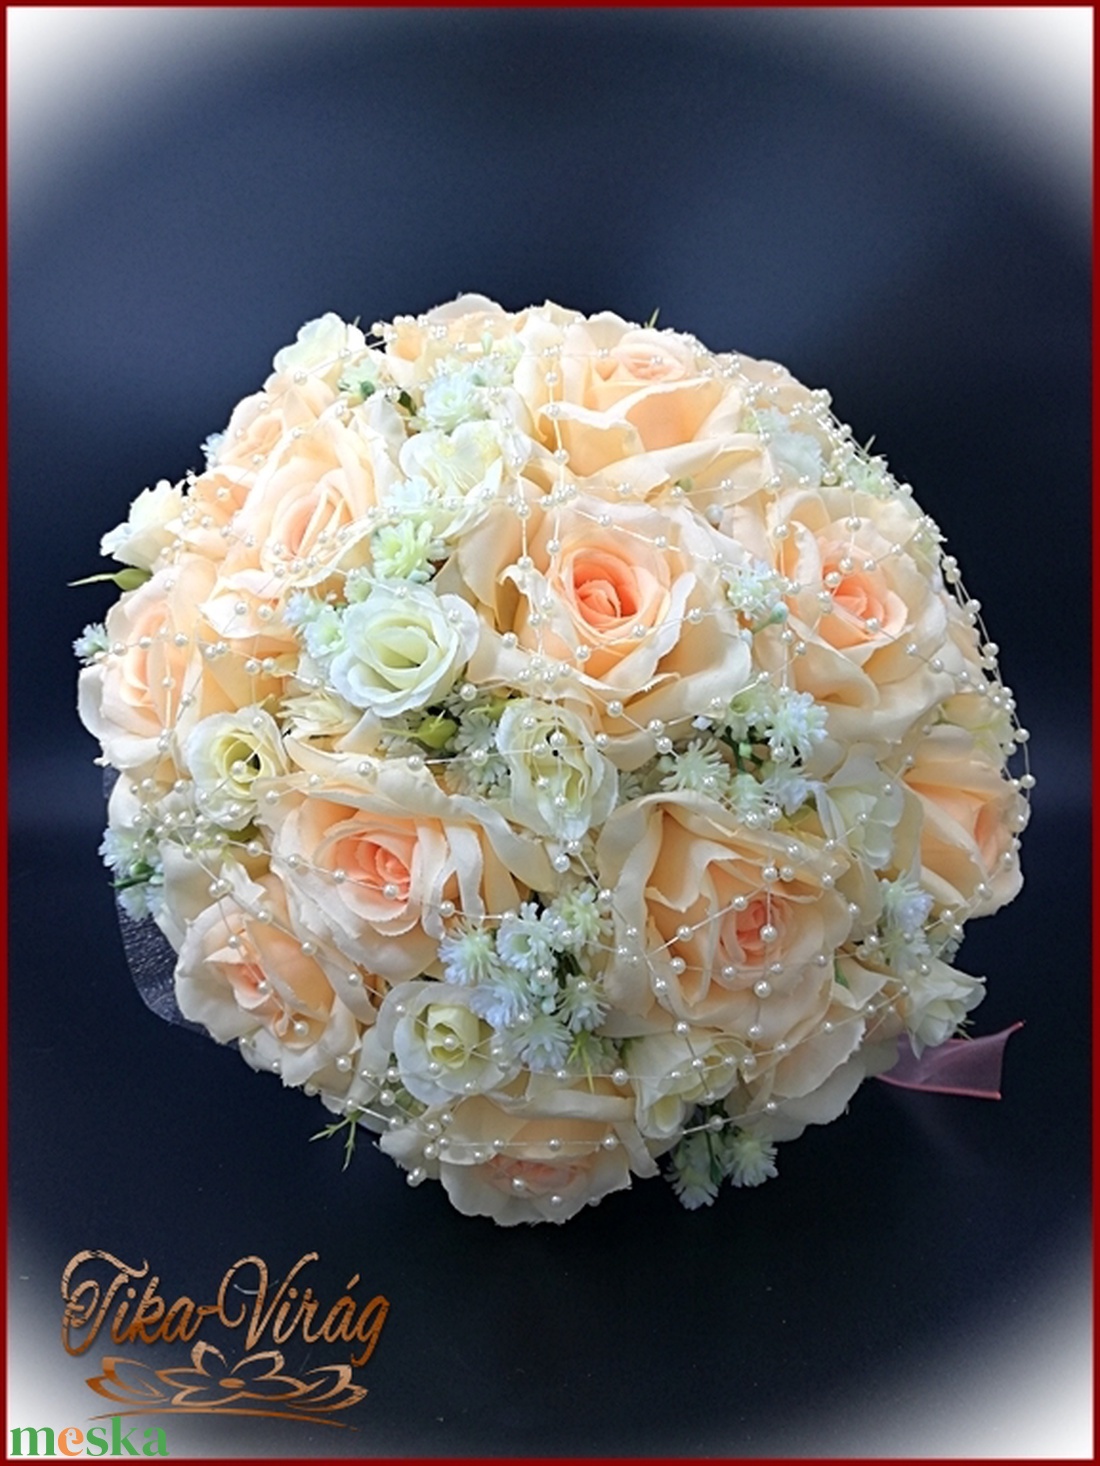 15 virágos barack-ekrü rózsás örök csokor kitűzővel  - esküvő - menyasszonyi- és dobócsokor - Meska.hu